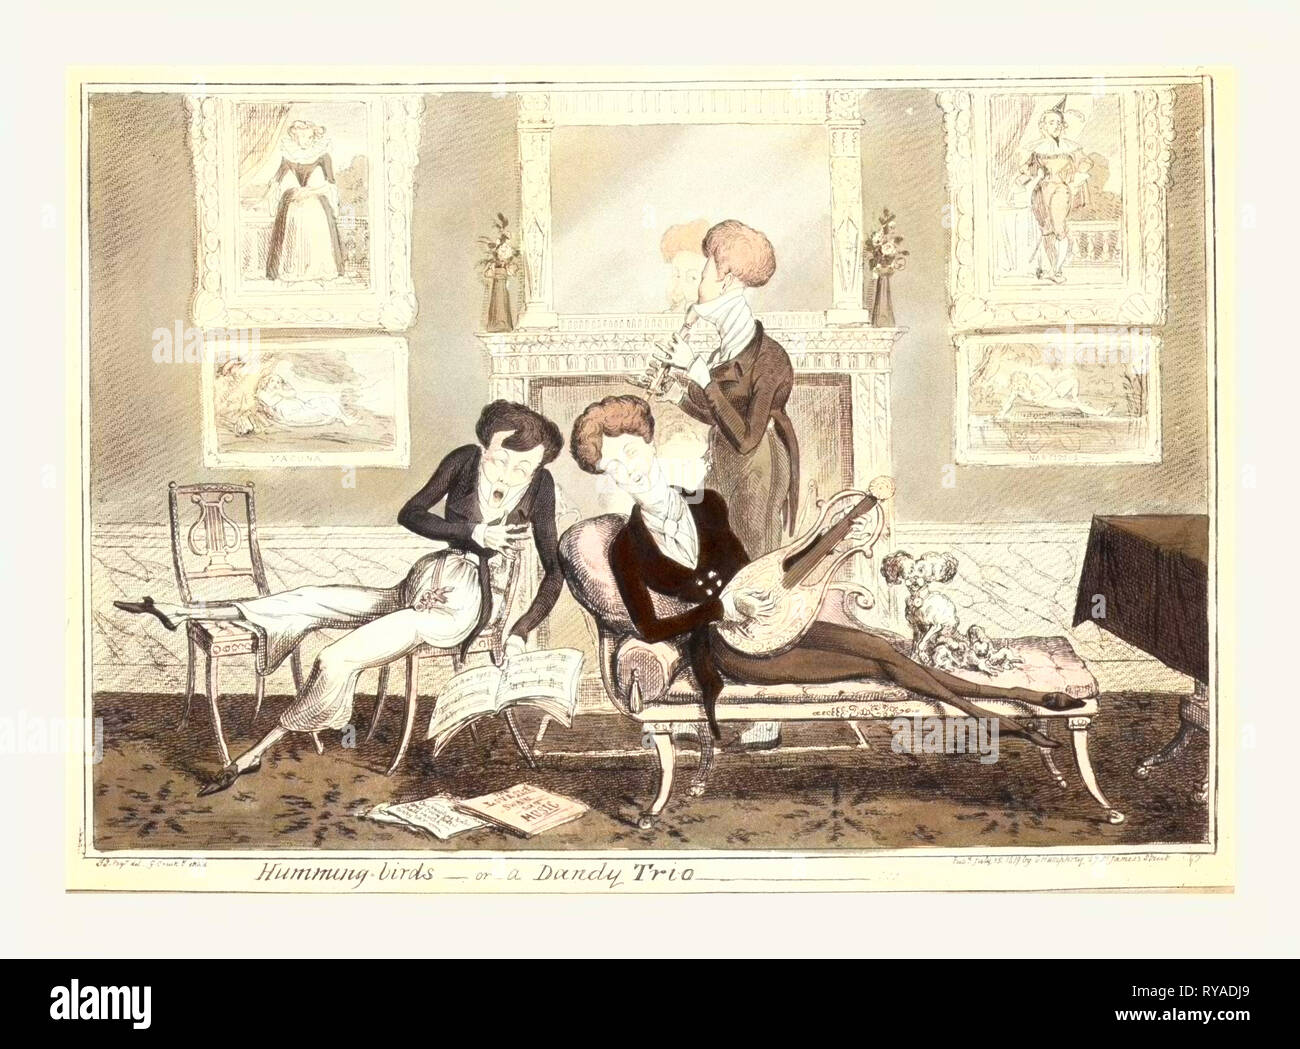 Kolibris oder ein Dandy Trio, Cruikshank, George, 1792-1878, Künstler, London, 1819, Drei modische Dandies Singen und Spielen von Instrumenten in einem Well-Furnished Zimmer Stockfoto